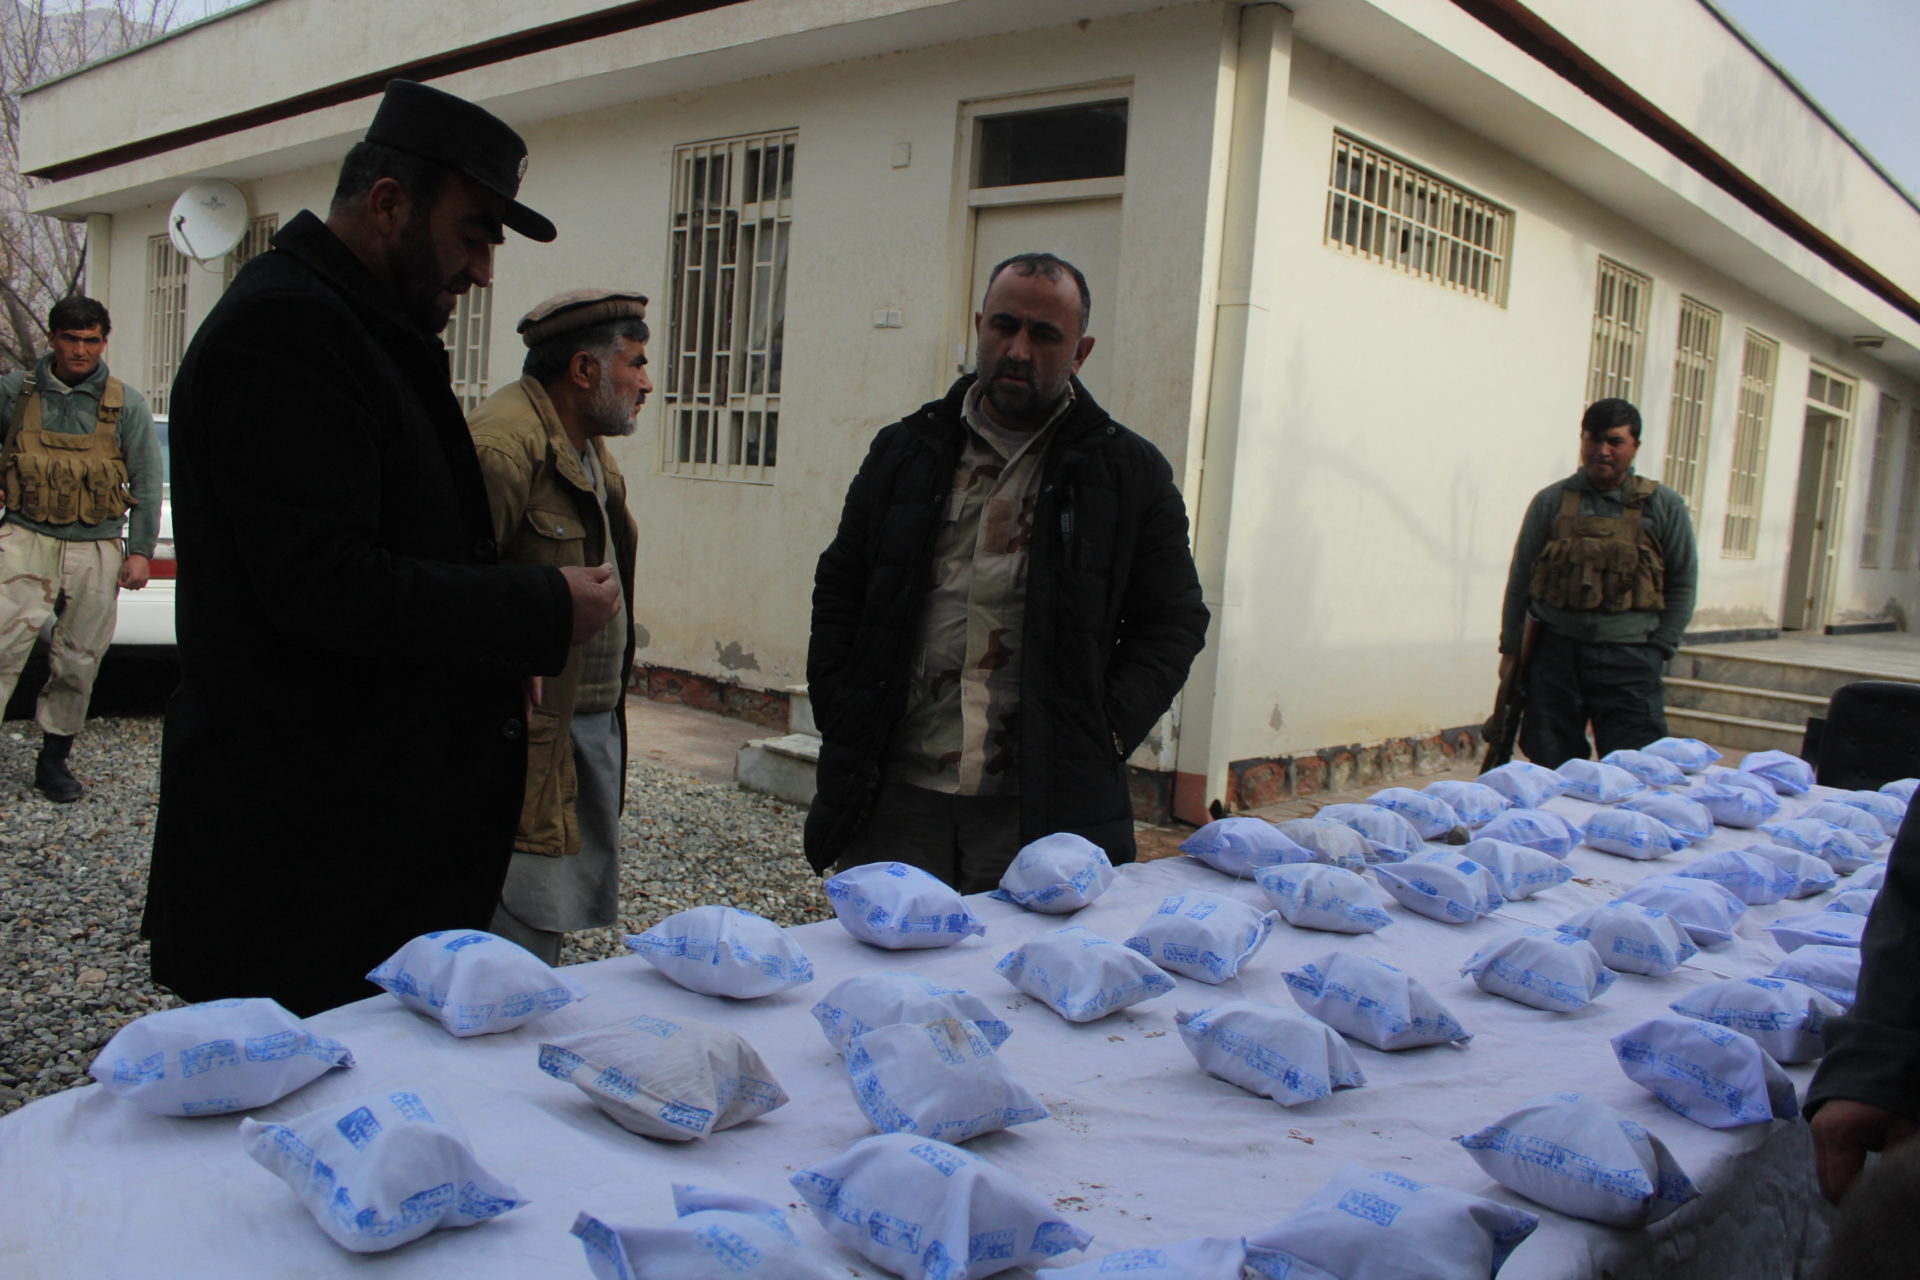 Csaknem három tonna Afganisztánból származó heroint foglaltak le Indiában